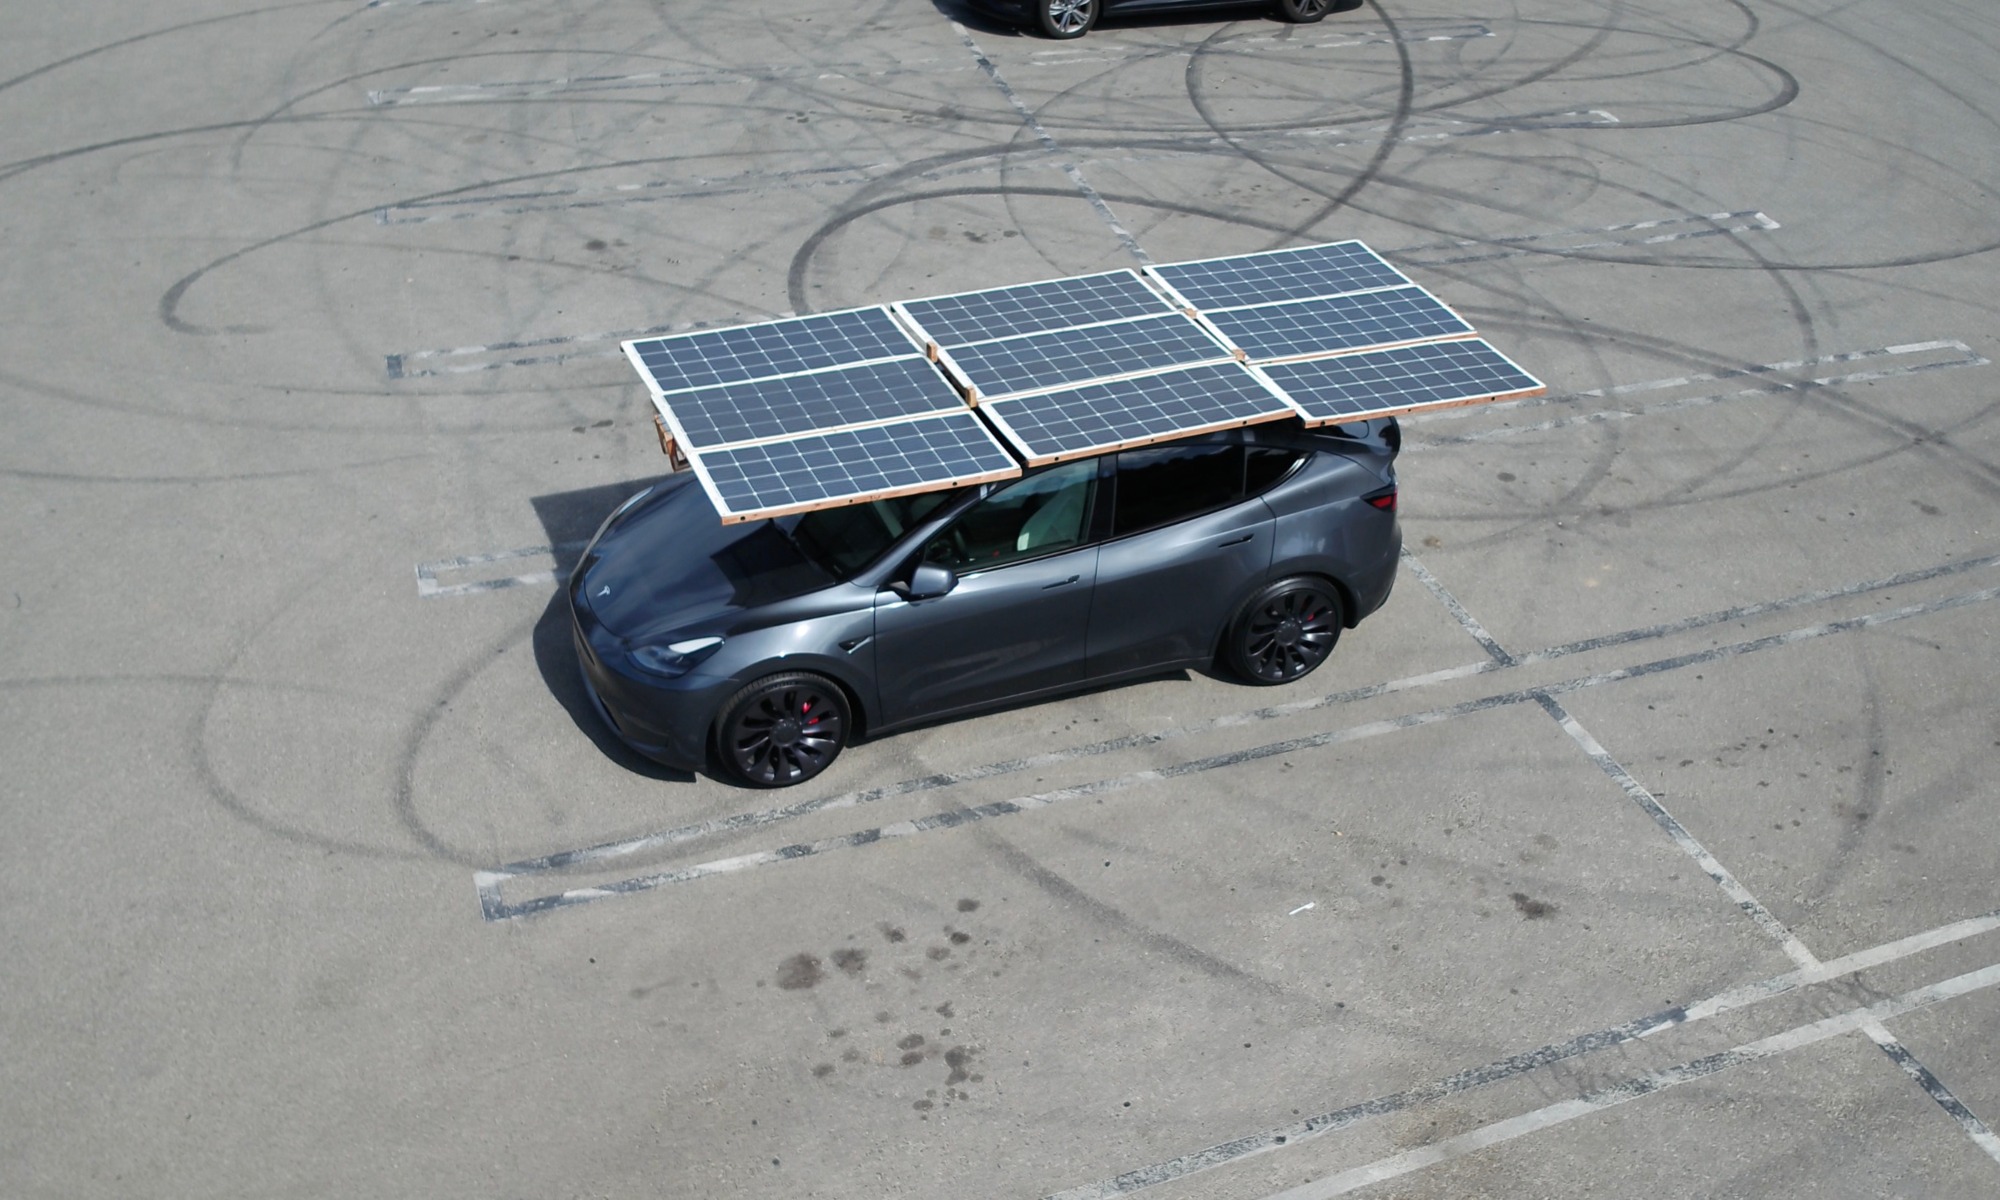 El usuario de Reddit ha incorporado paneles solares para incrementar su autonomía.